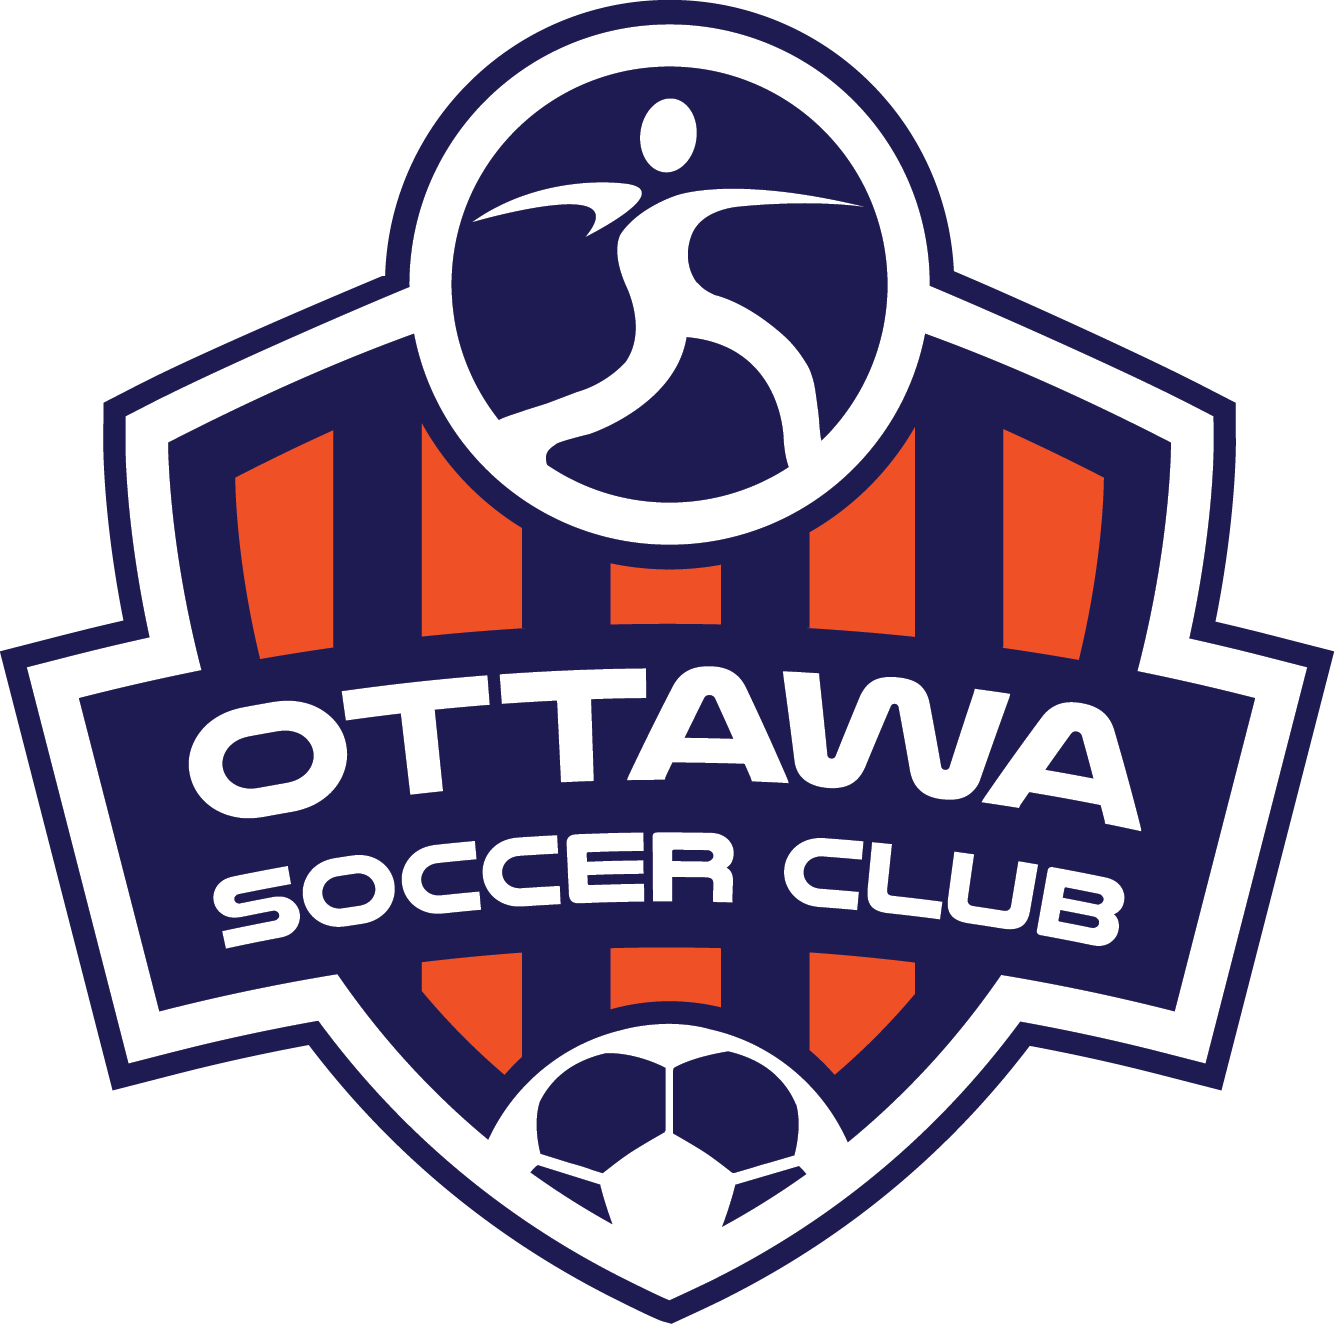 Ottawa Soccer Club logo